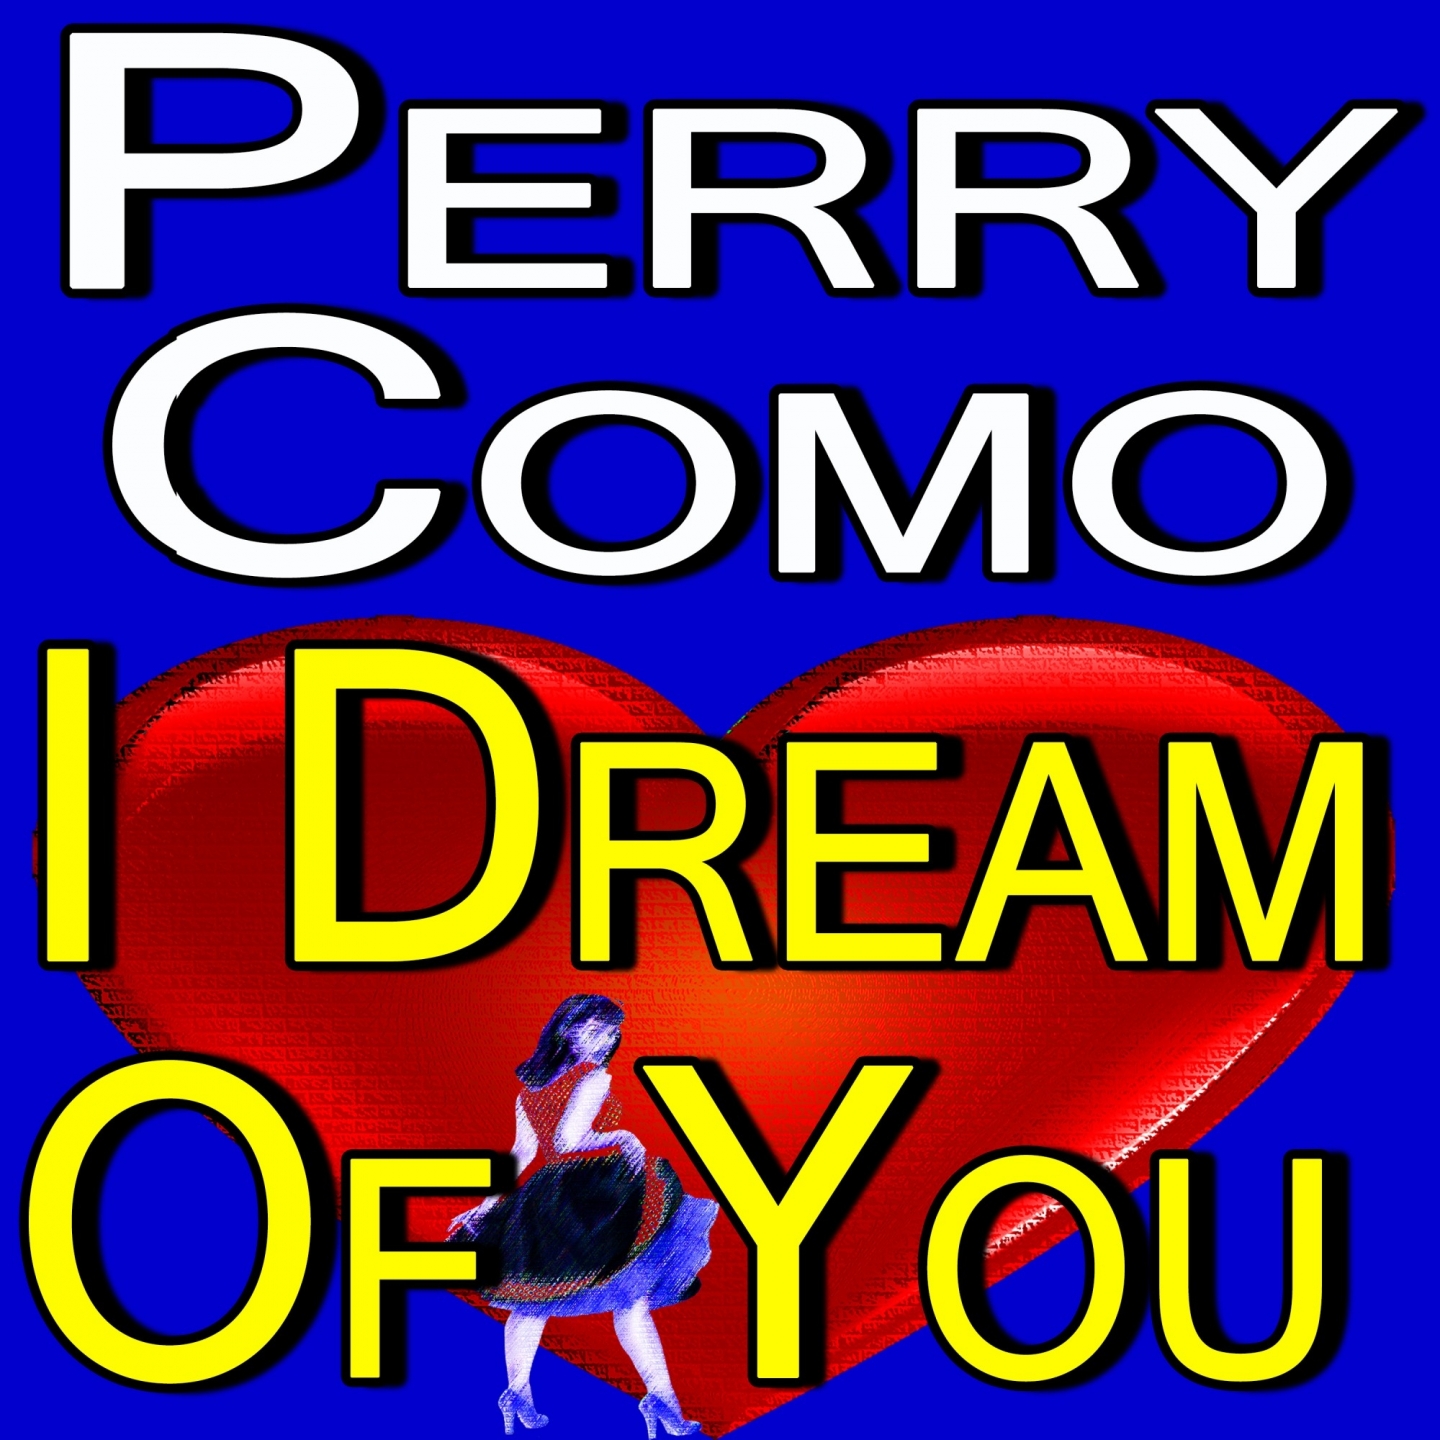 Perry Como I Dream Of You